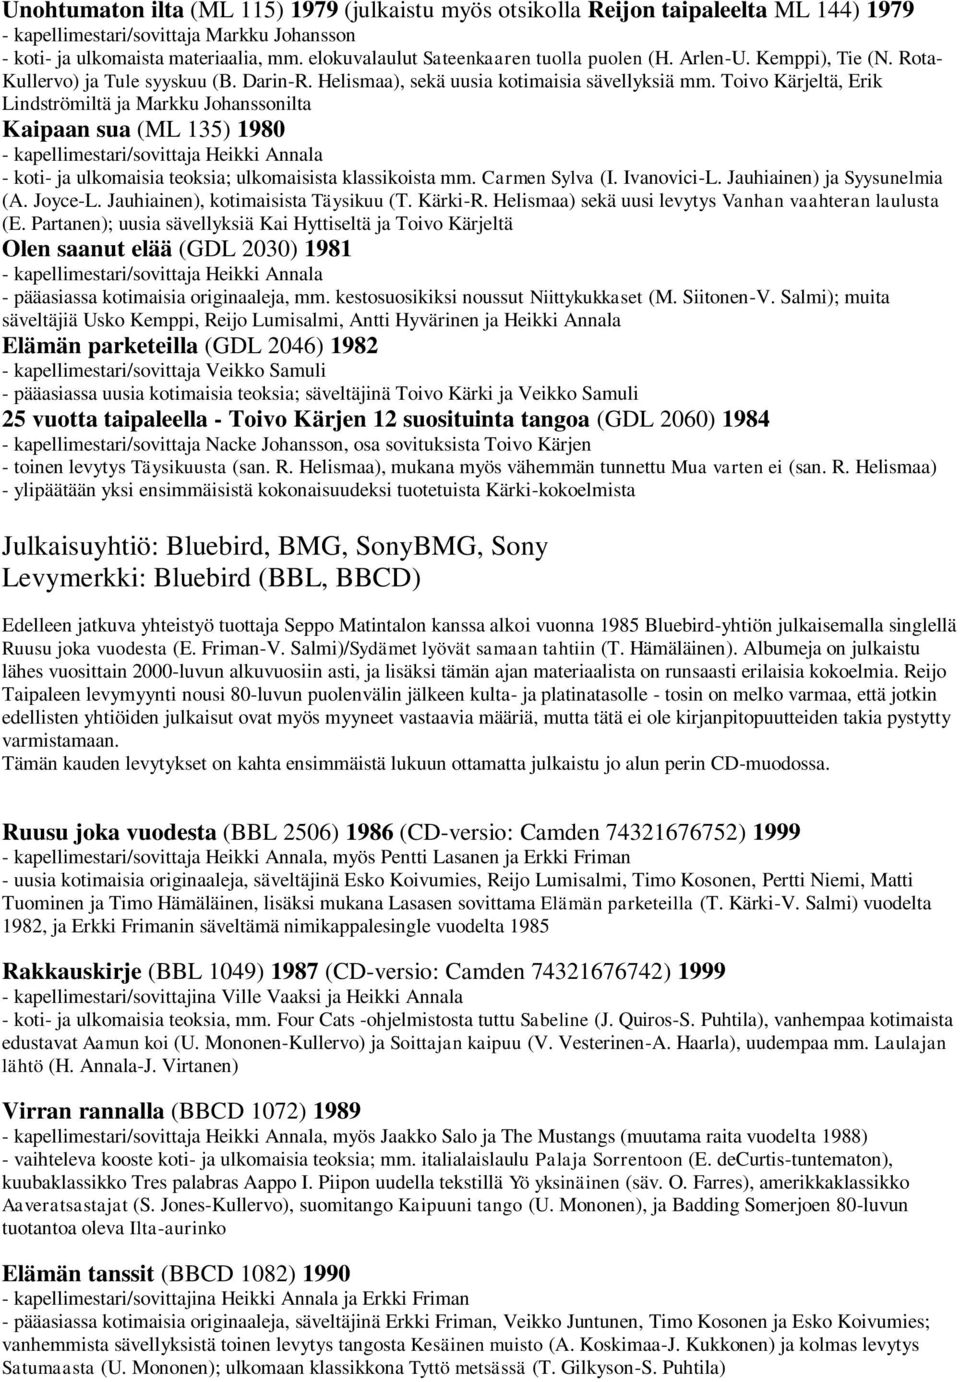 Toivo Kärjeltä, Erik Lindströmiltä ja Markku Johanssonilta Kaipaan sua (ML 135) 1980 - kapellimestari/sovittaja Heikki Annala - koti- ja ulkomaisia teoksia; ulkomaisista klassikoista mm.